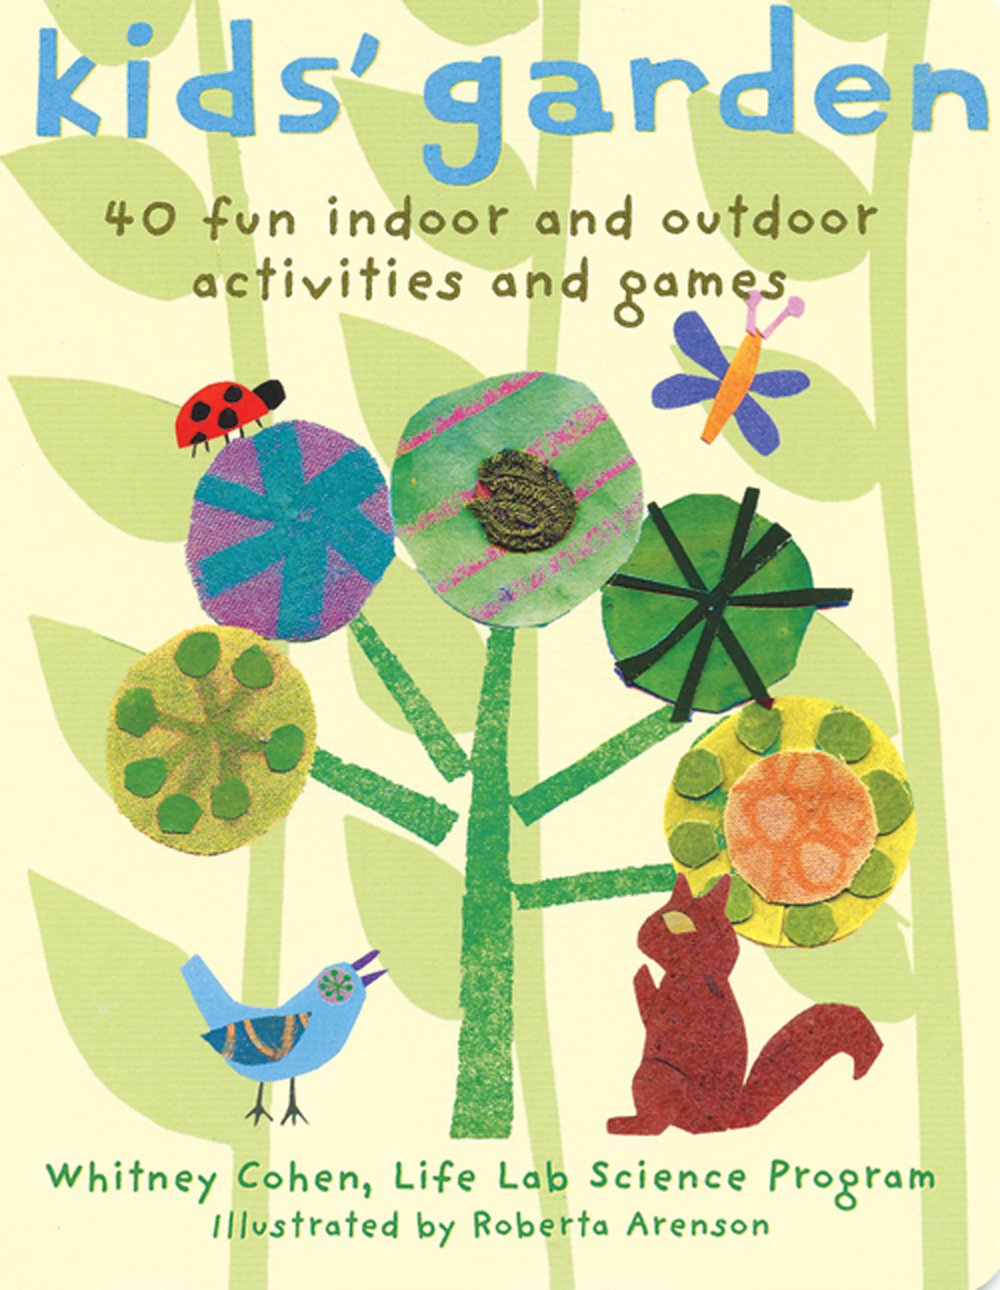 Kids' Garden: 40 Fun Indoor and Outdoor Activities and Games